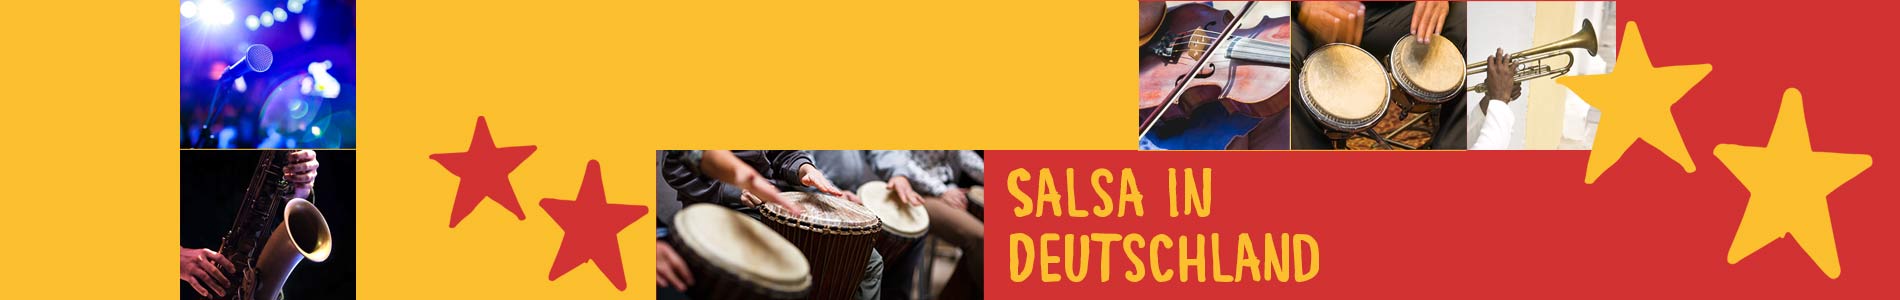 Salsa in Brome – Salsa lernen und tanzen, Tanzkurse, Partys, Veranstaltungen